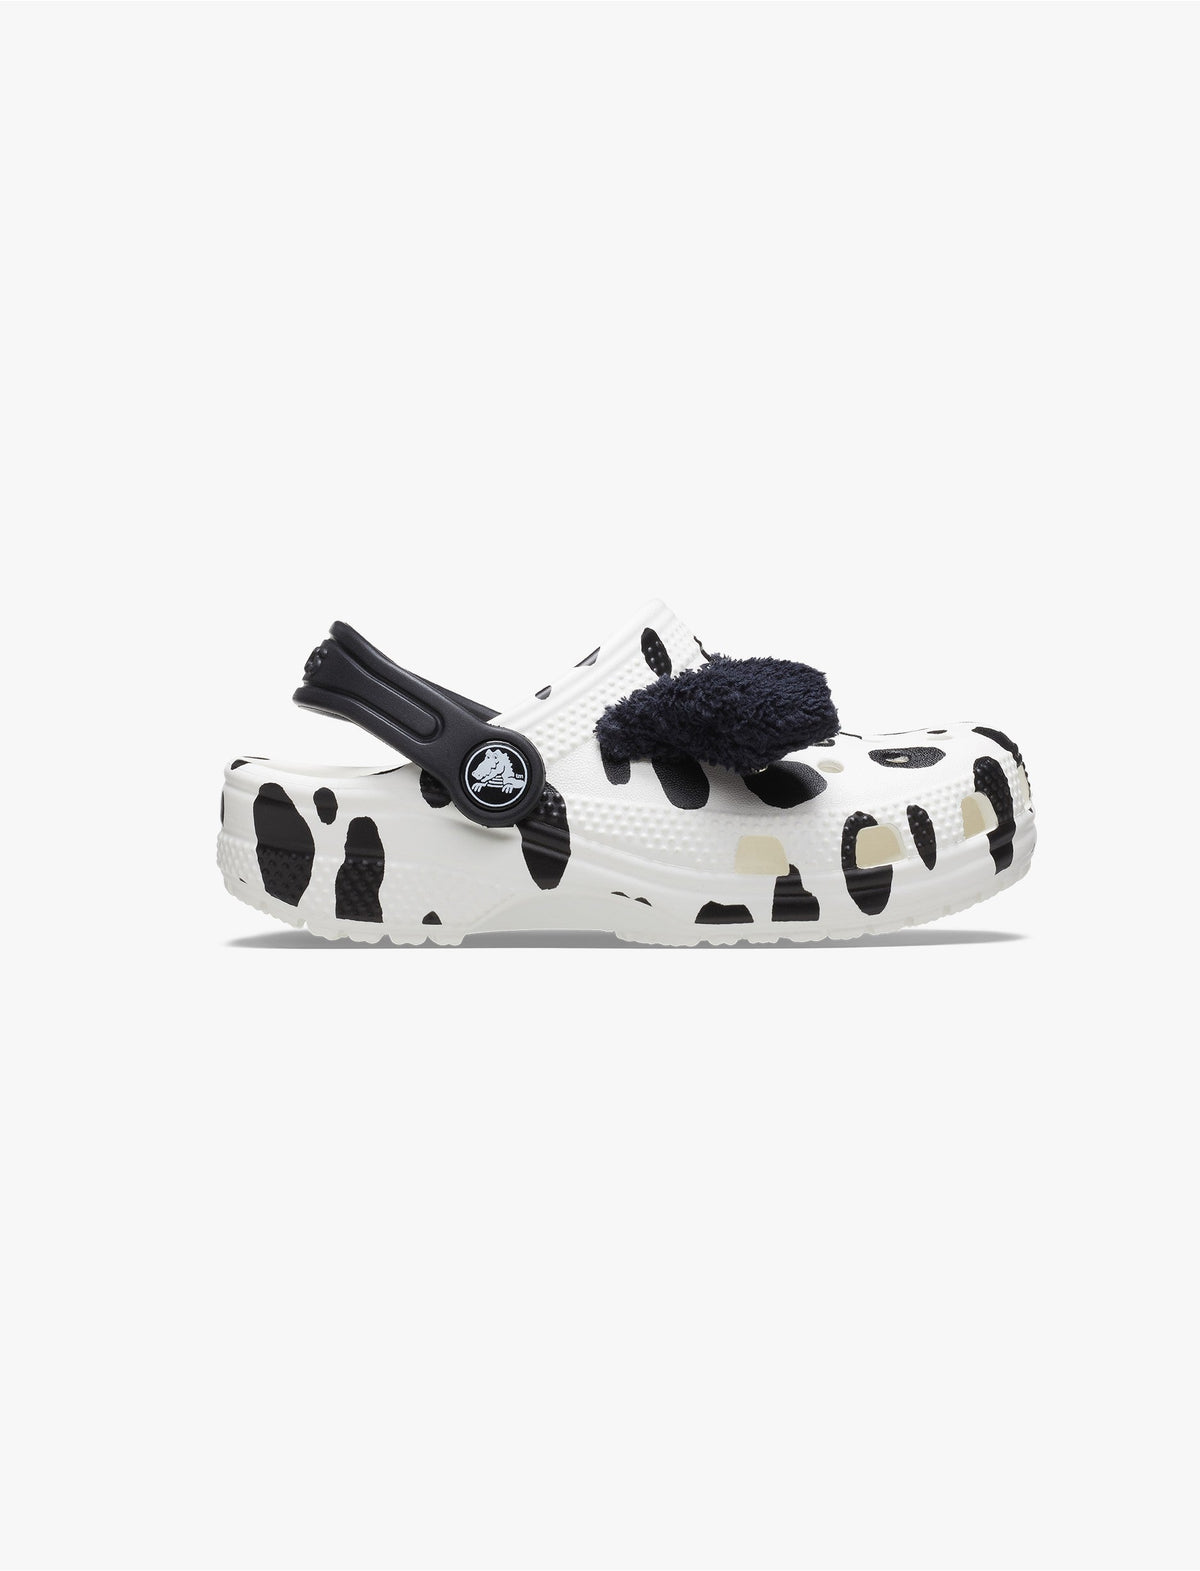 Crocs Classic I AM Dalmatian Clog T - כפכפי קלוג קרוקס לפעוטות בצבע שחור/לבן ובעיצוב דלמטי-Crocs-27-28-נאקו